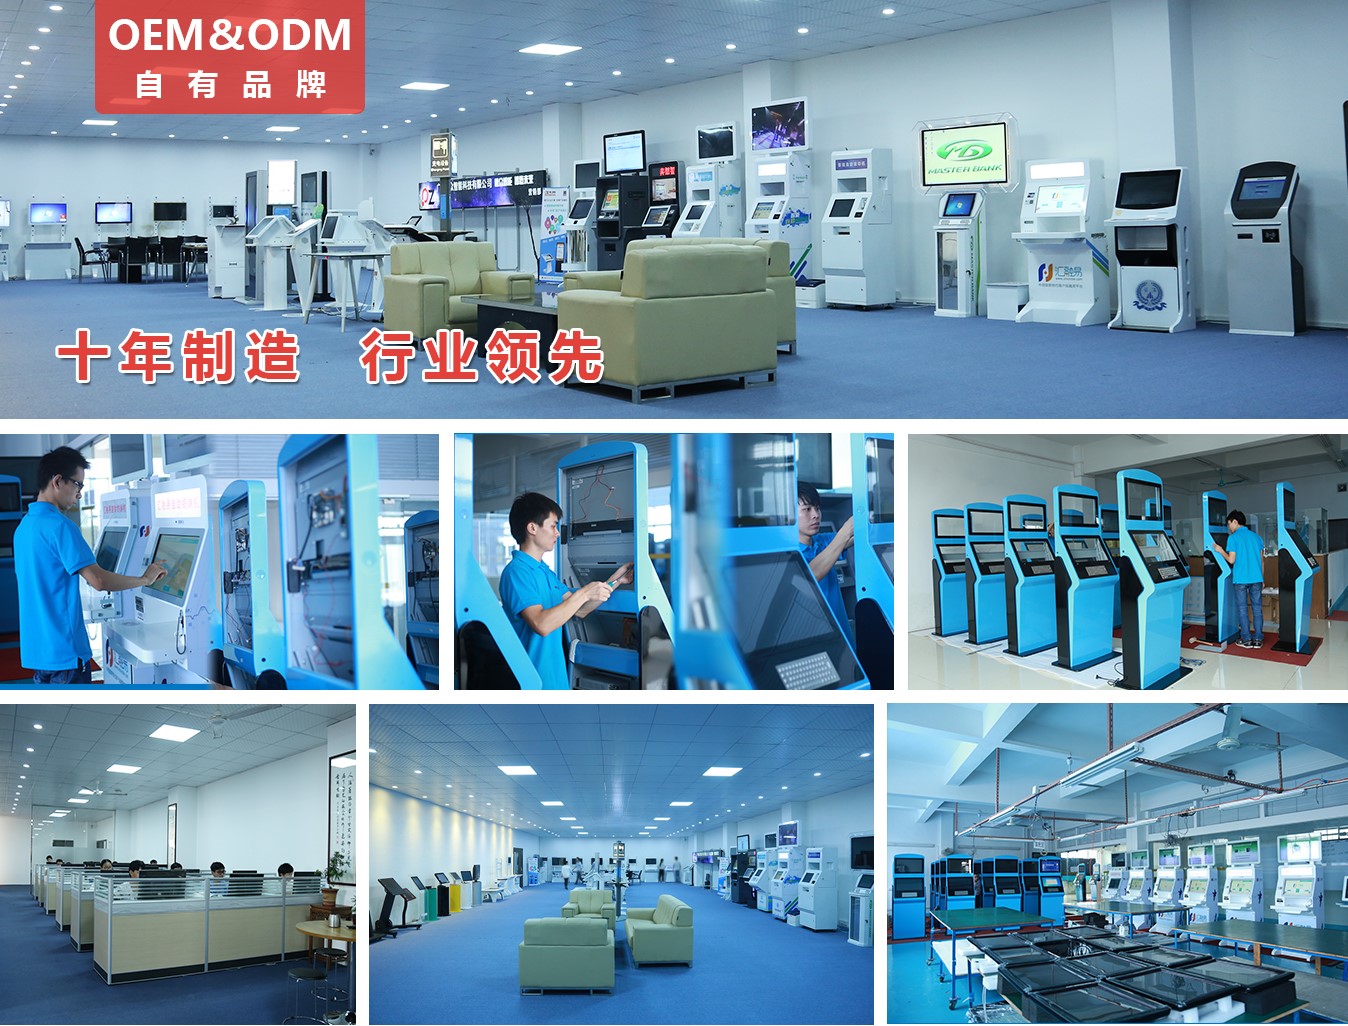 65寸壁挂触摸一体机/教学一体机PZ-65BHT--广州磐众智能科技有限公司